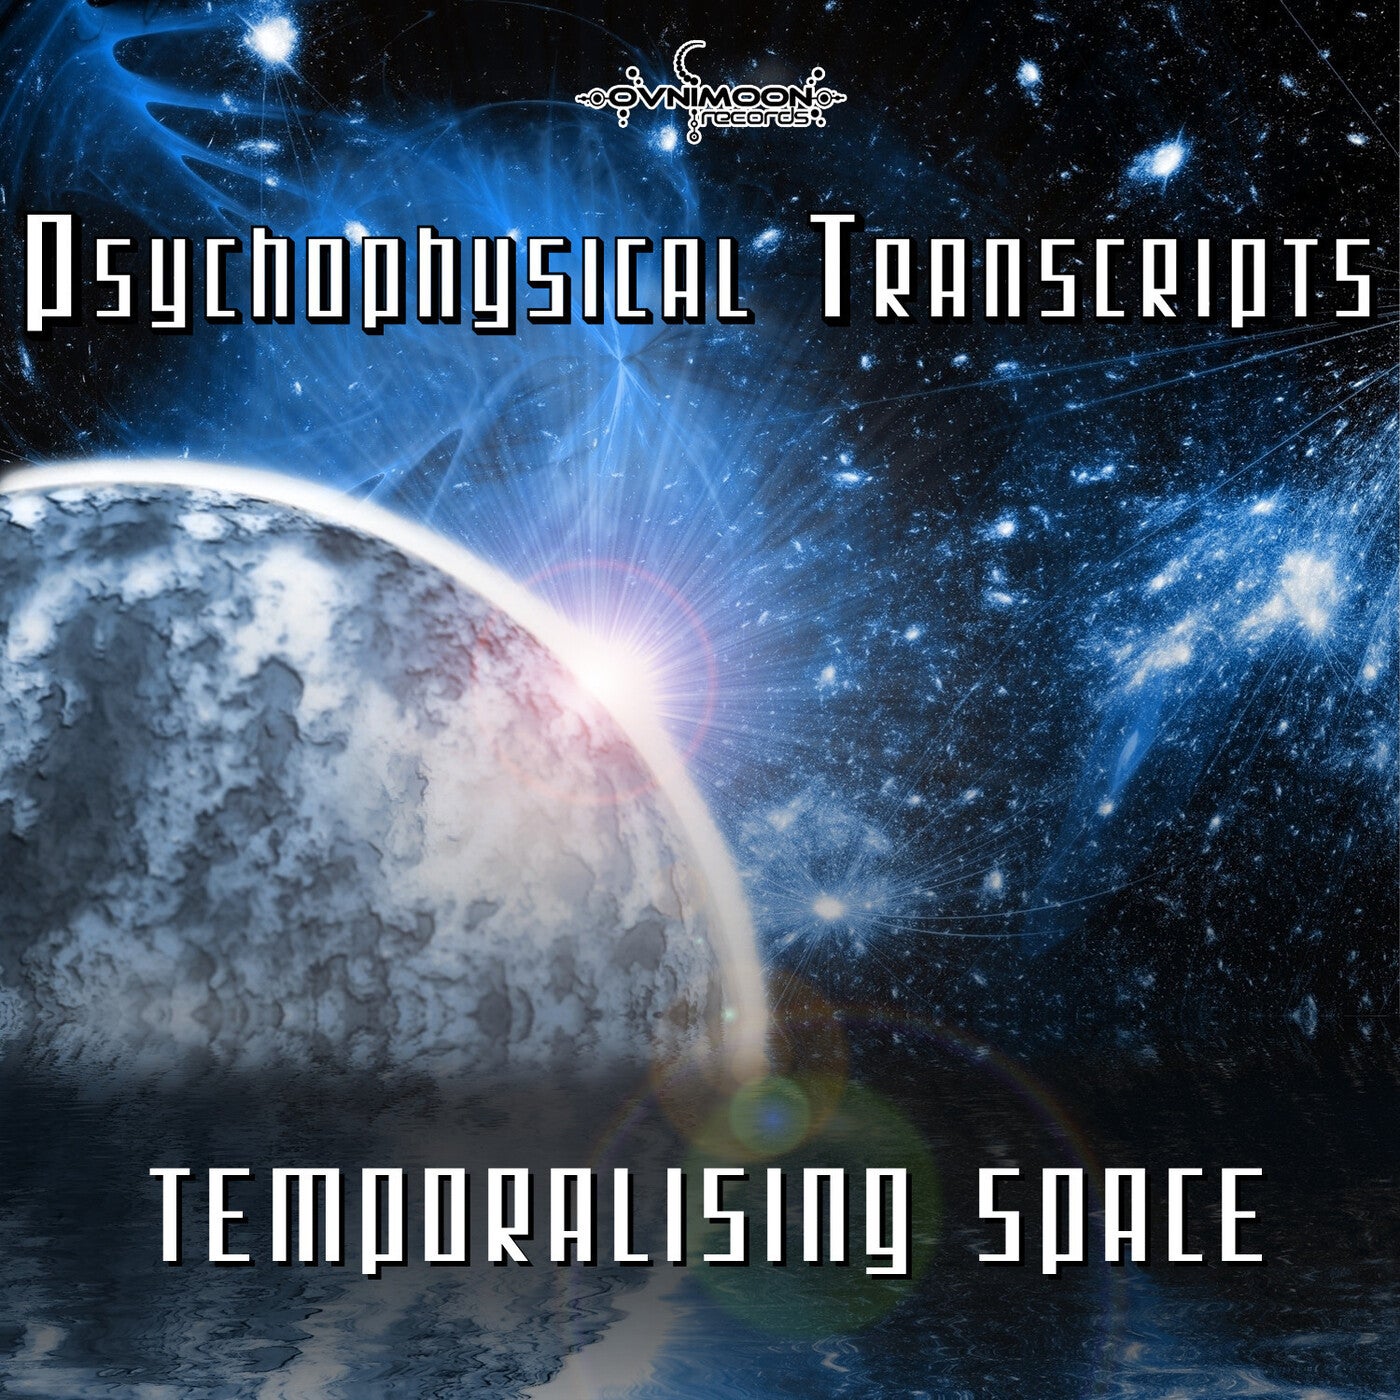 Temporalising Space